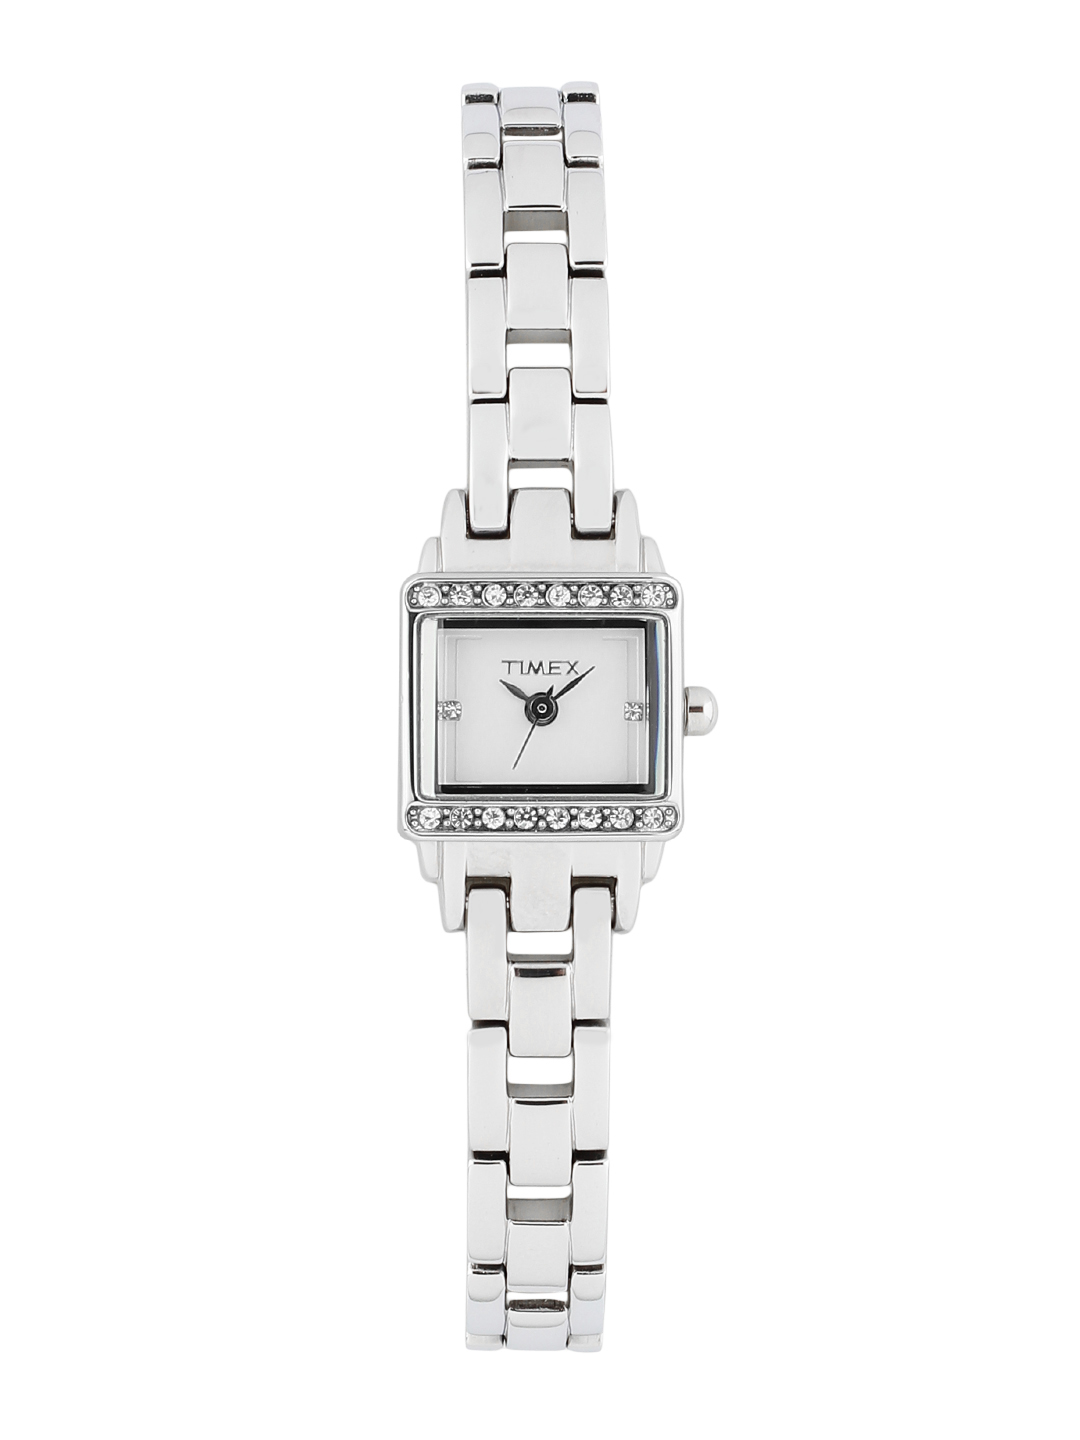 Timex Women's T5K230 Ironman 30-Lap Digital Watch